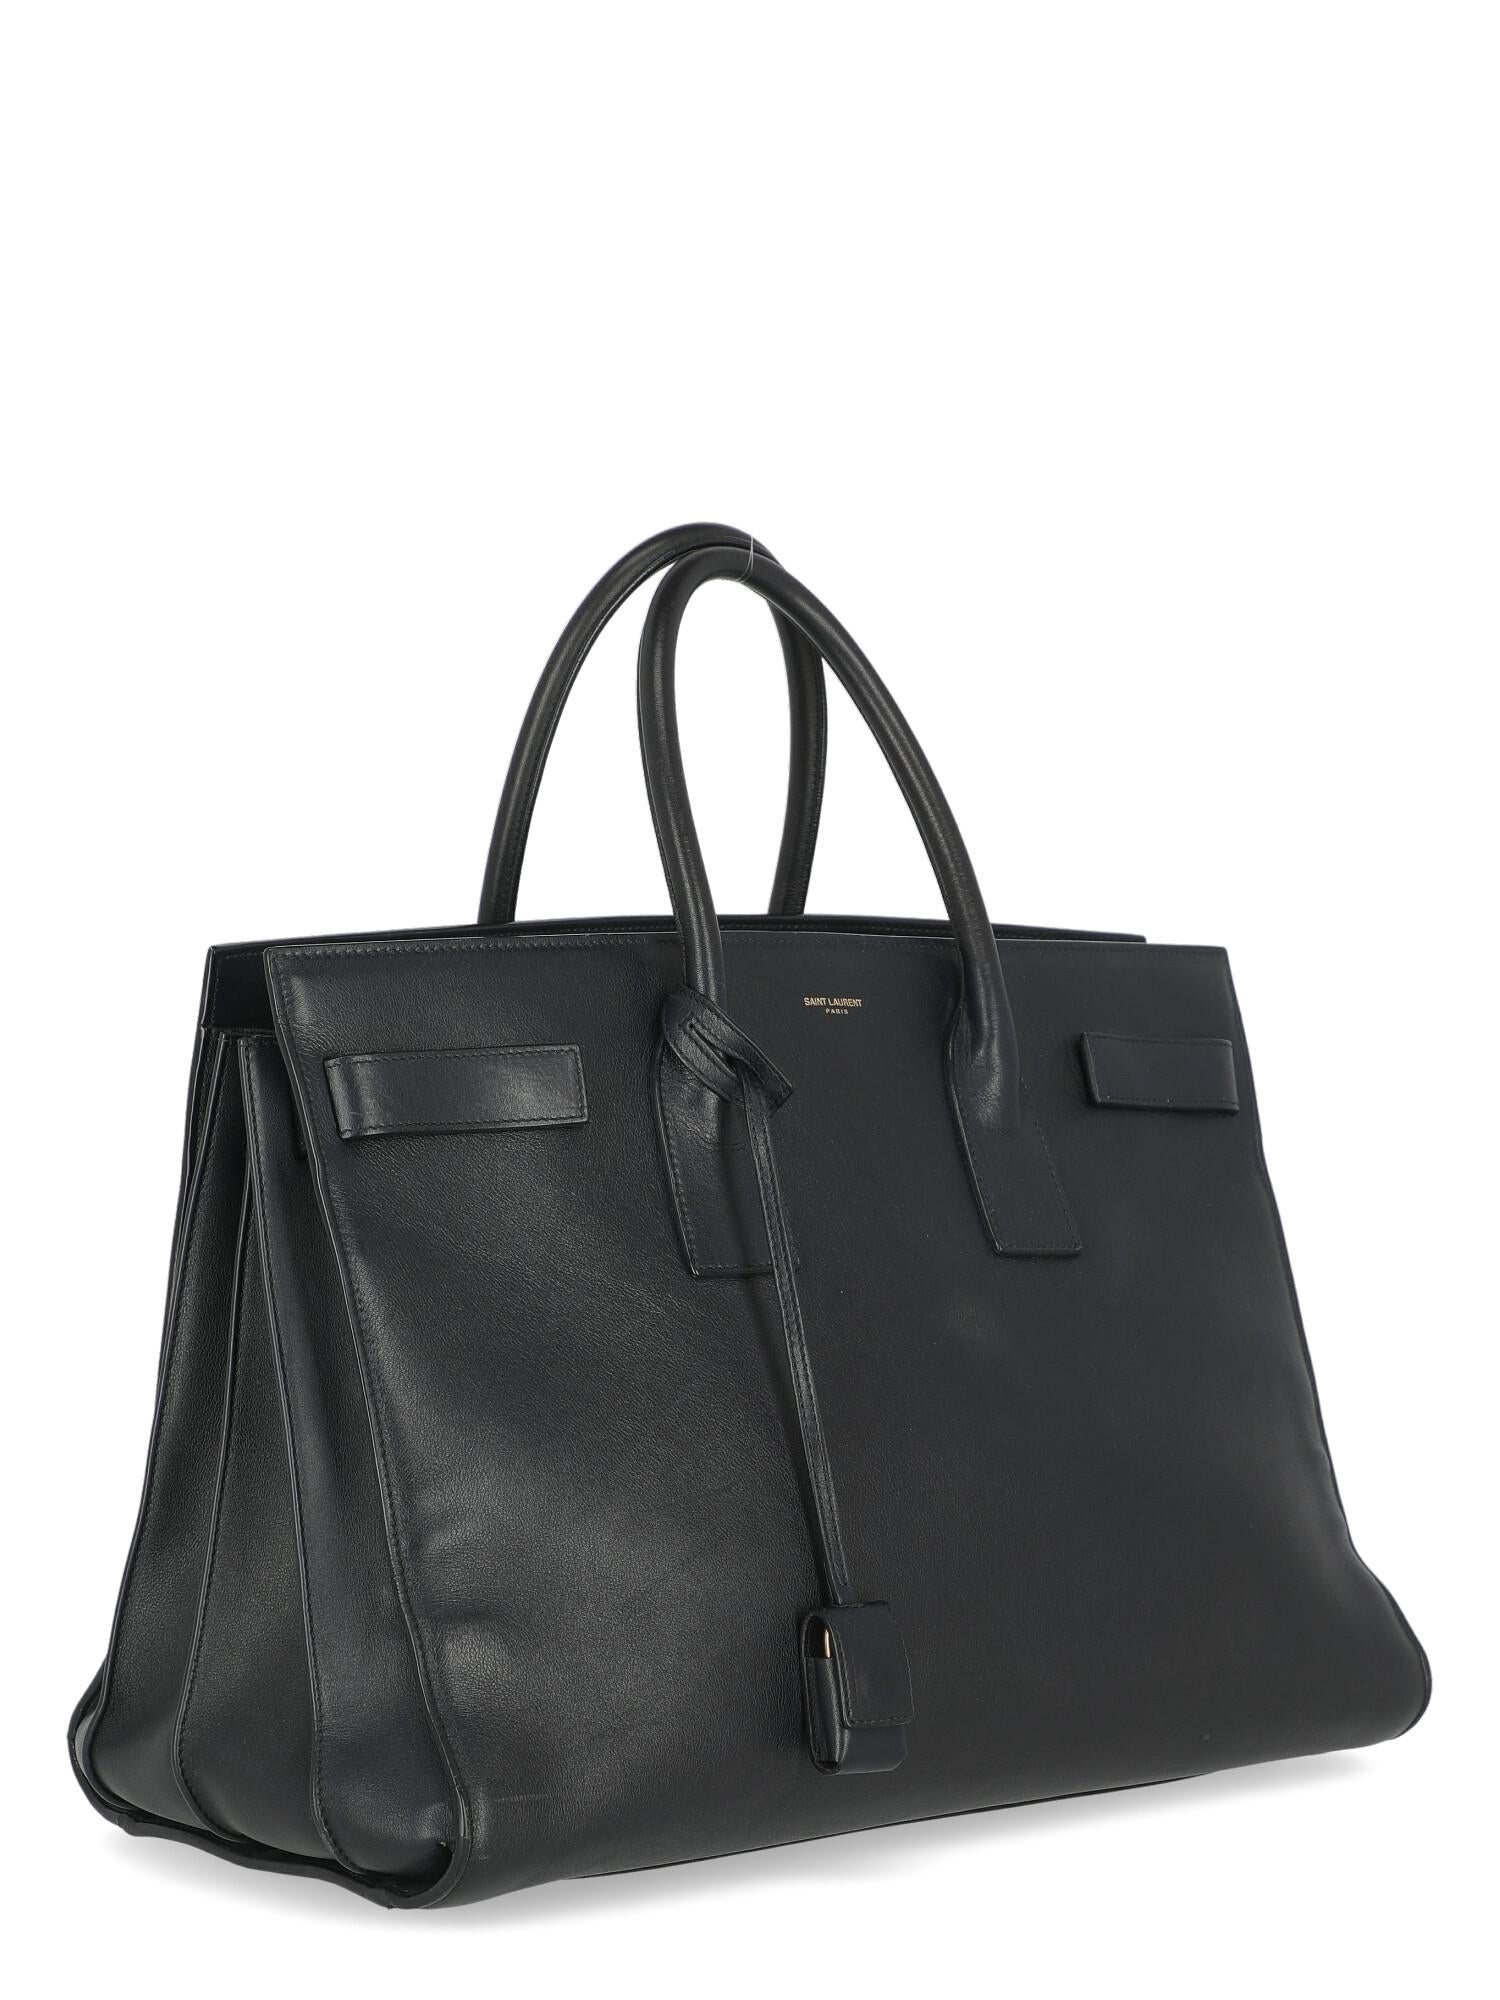 Black Saint Laurent Woman Handbag Sac De Jour Navy Leather For Sale